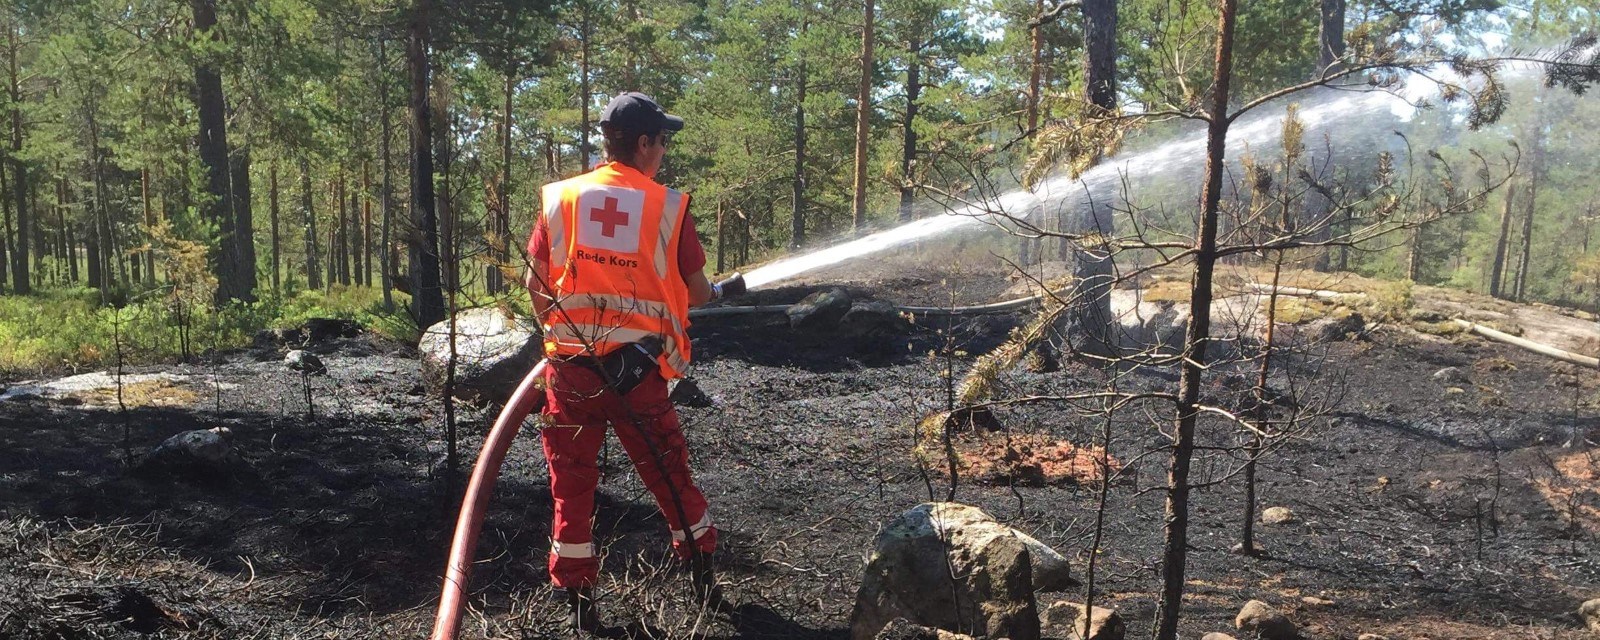 En hjelpekorpser slukker brann-